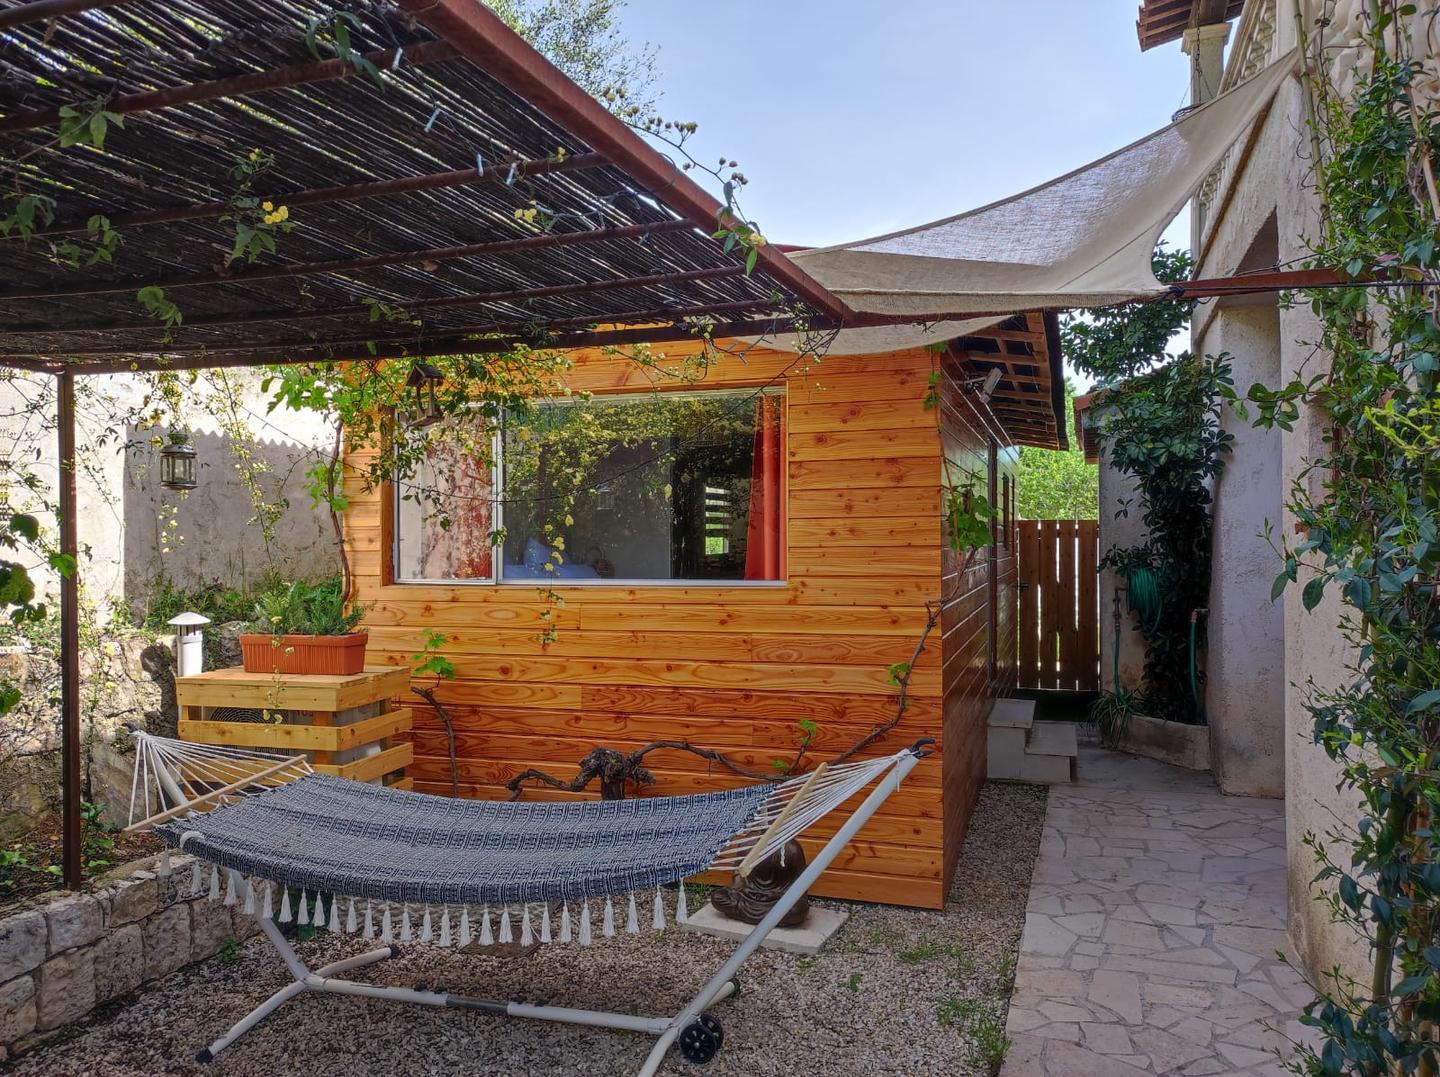 Hôte GreenGo: "La Casetta" Charmand bungalow tout confort